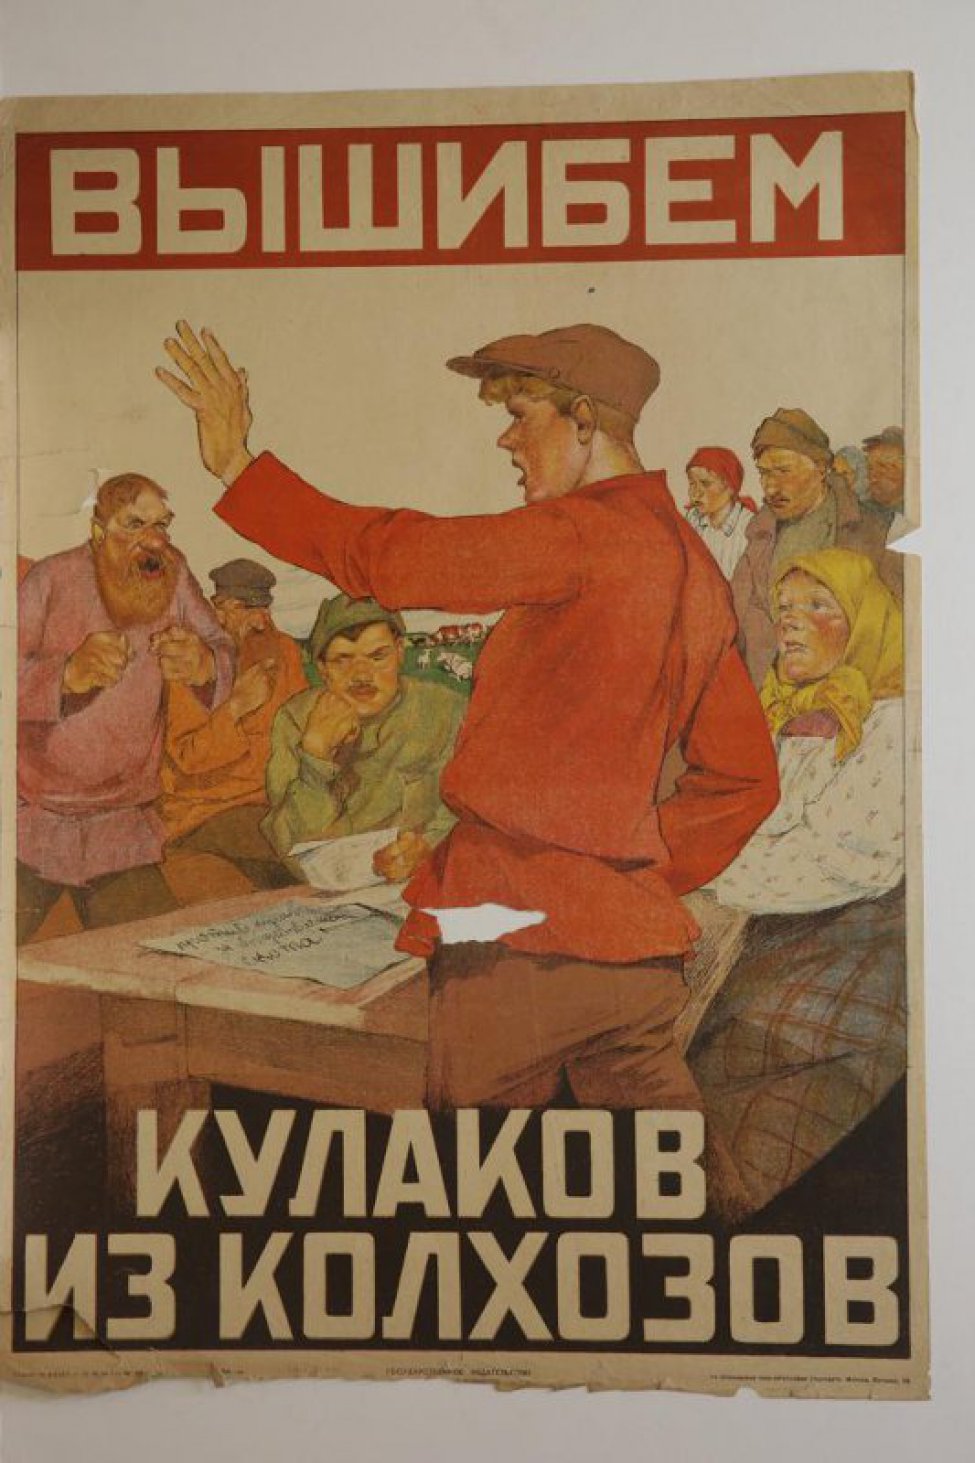 Изображен оратор в красной рубахе боком к хранителю с вытянутой рукой перед собранием крестьян.